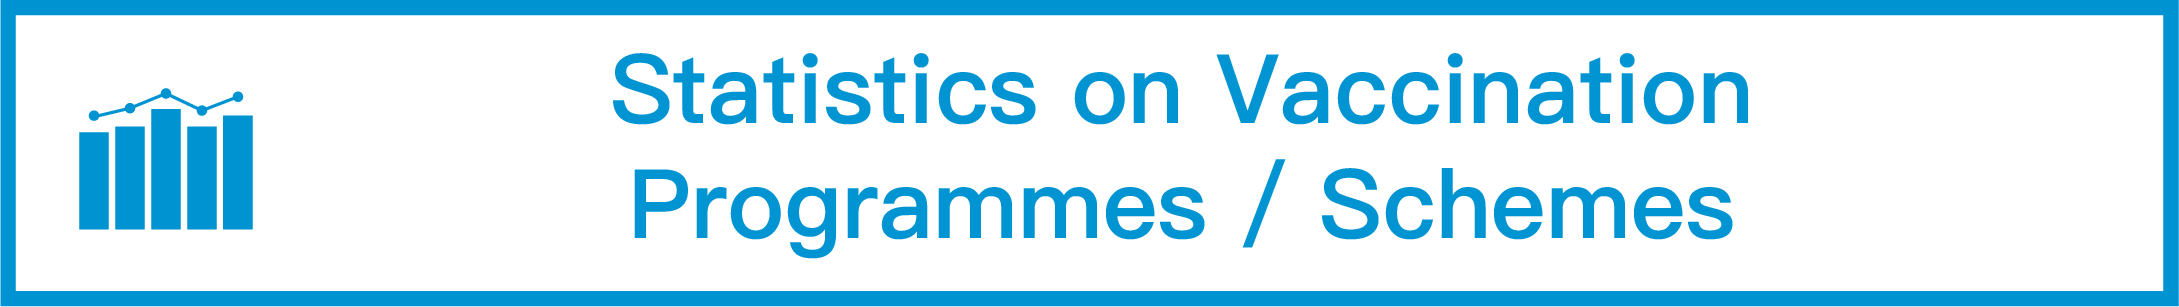 Statistics on Vaccination Programmes/Schemes